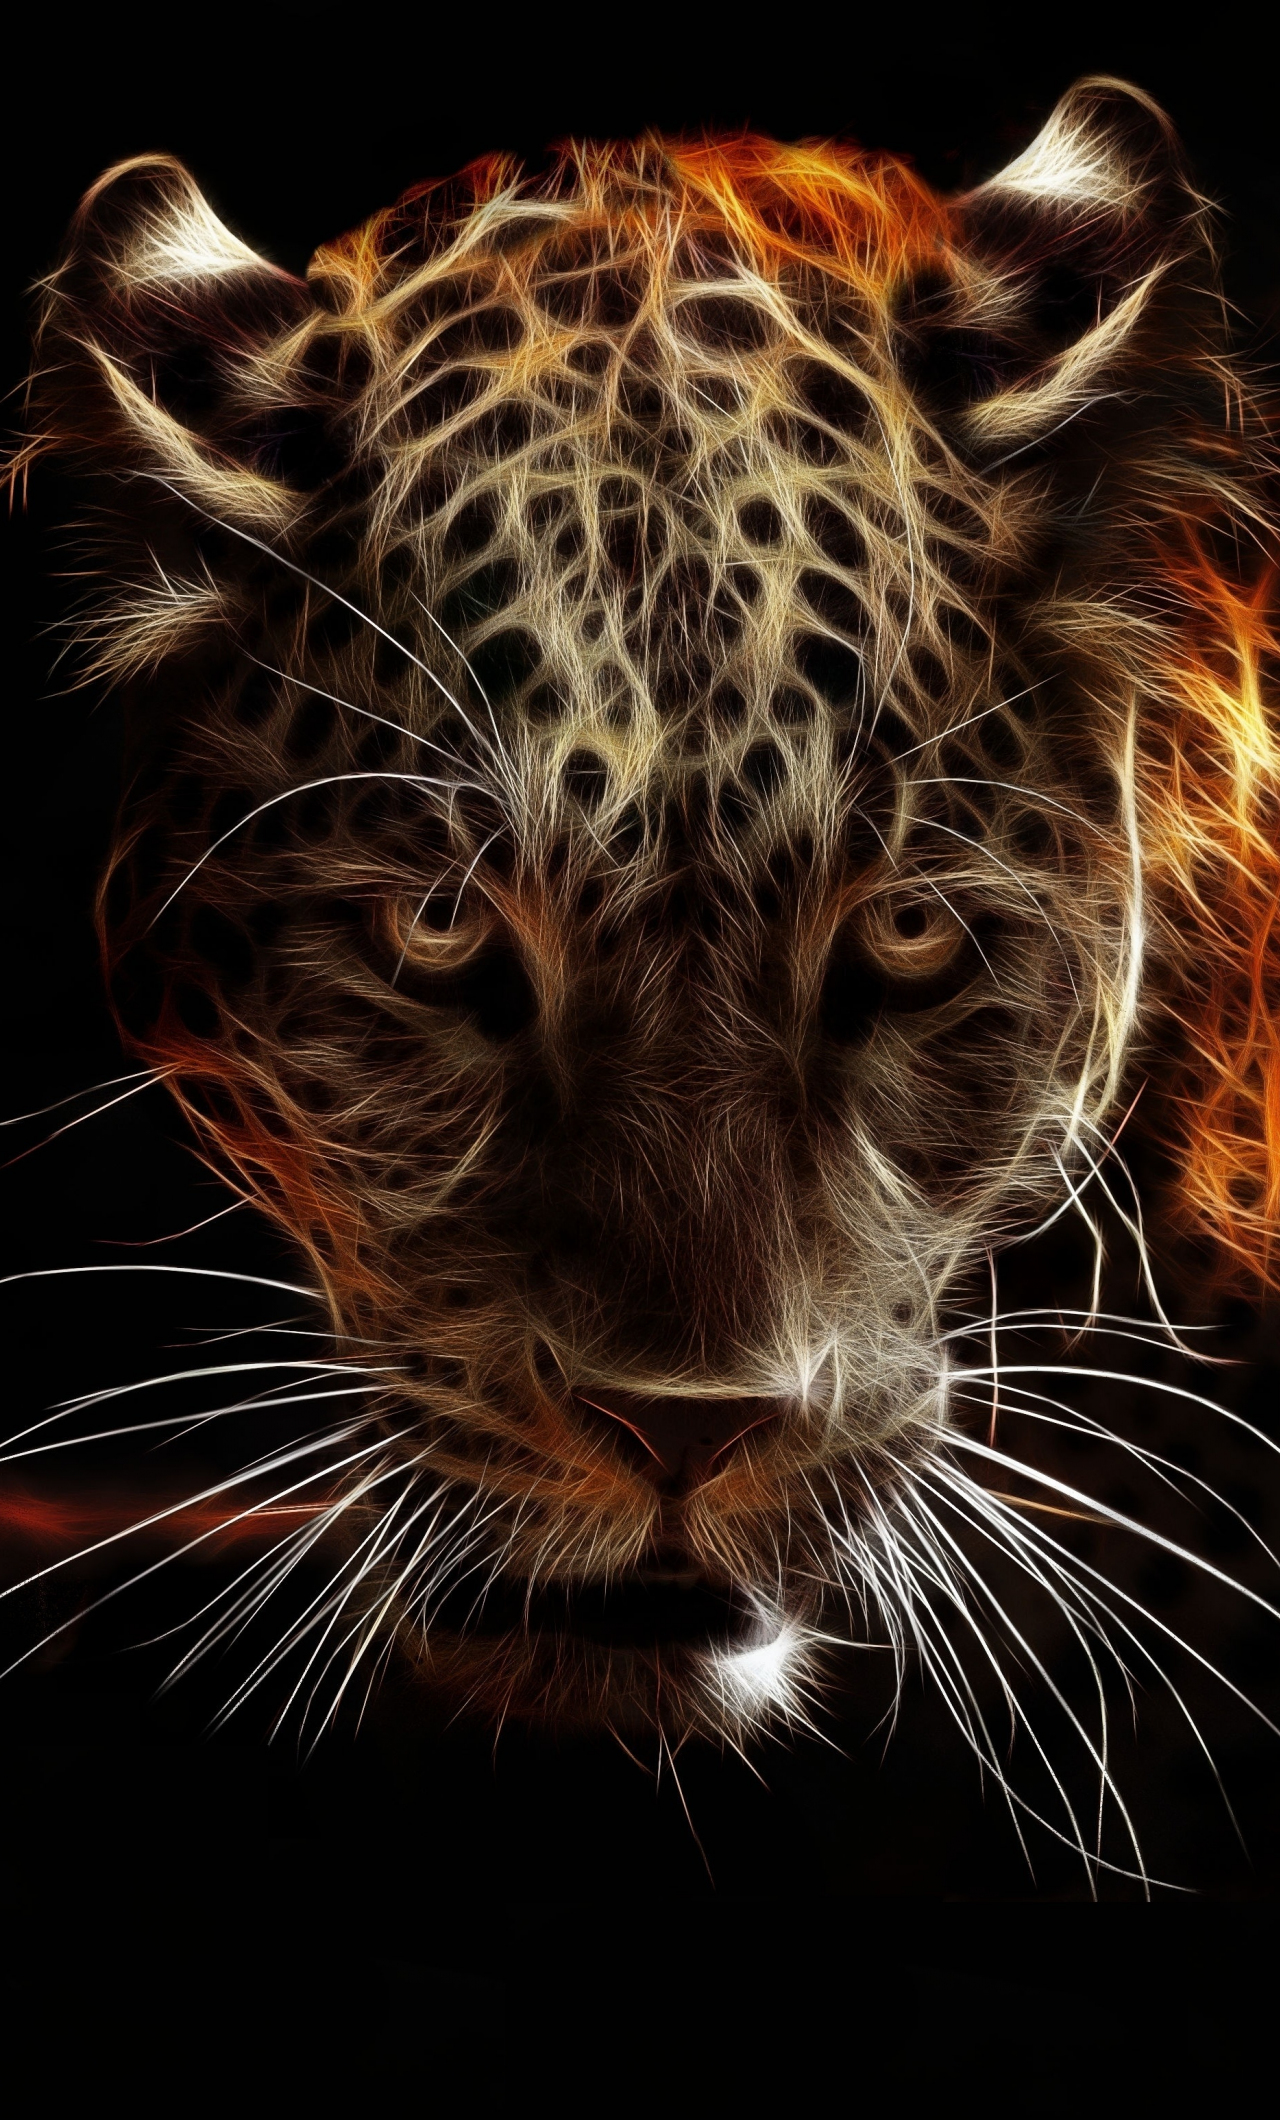 Download 1280x2120 Wallpaper Jaguar Animal Wildlife Artwork